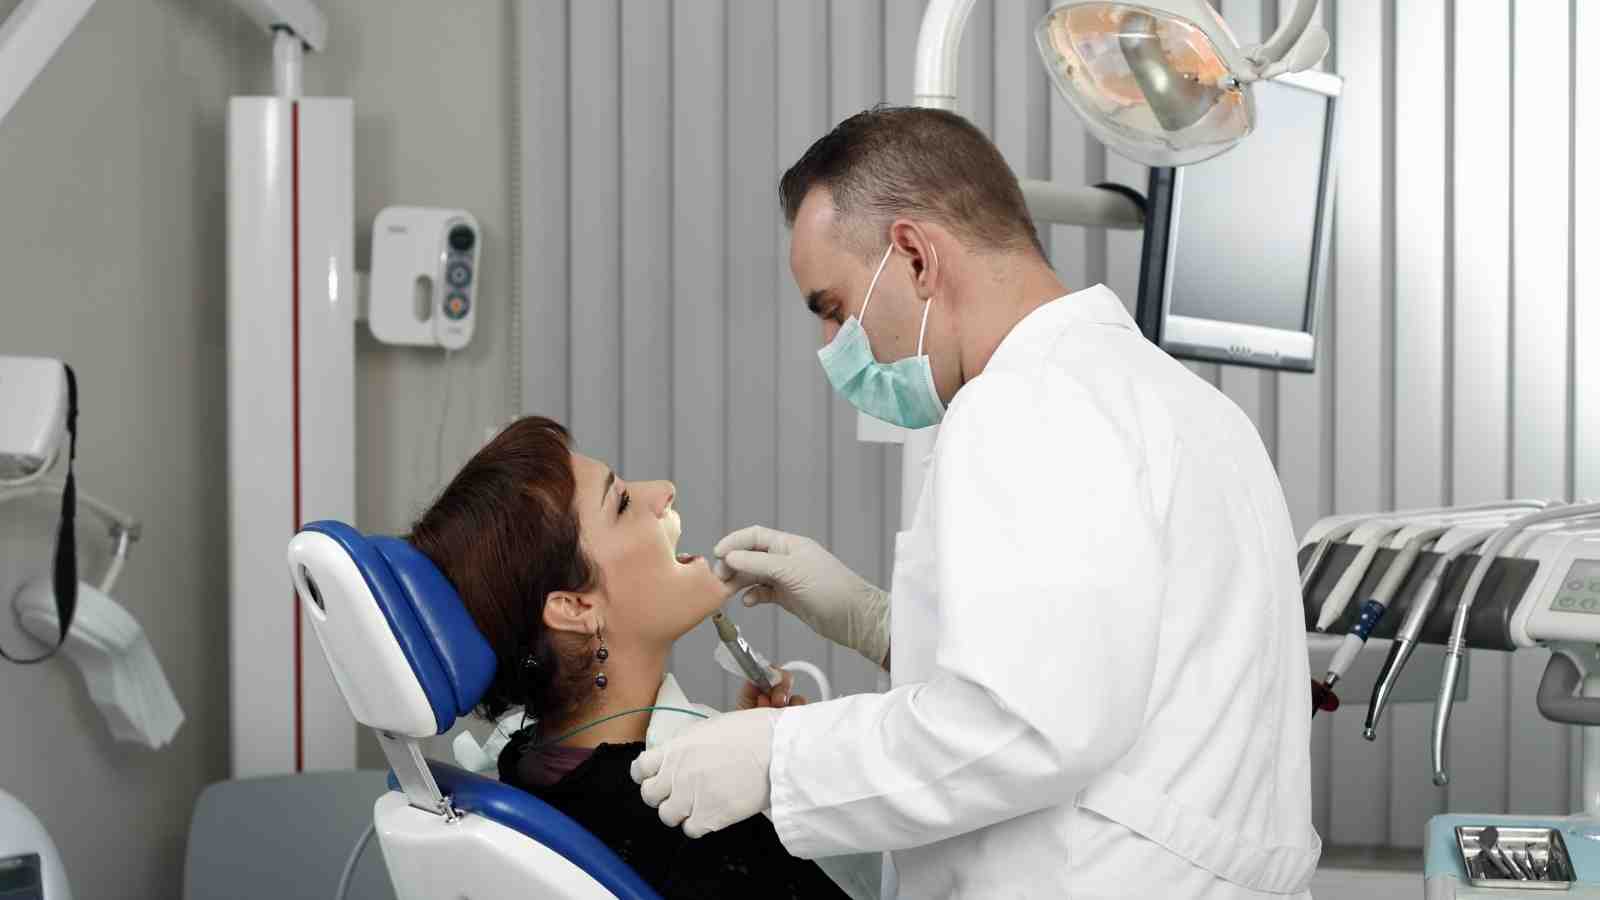 Benefits of Orthodontics